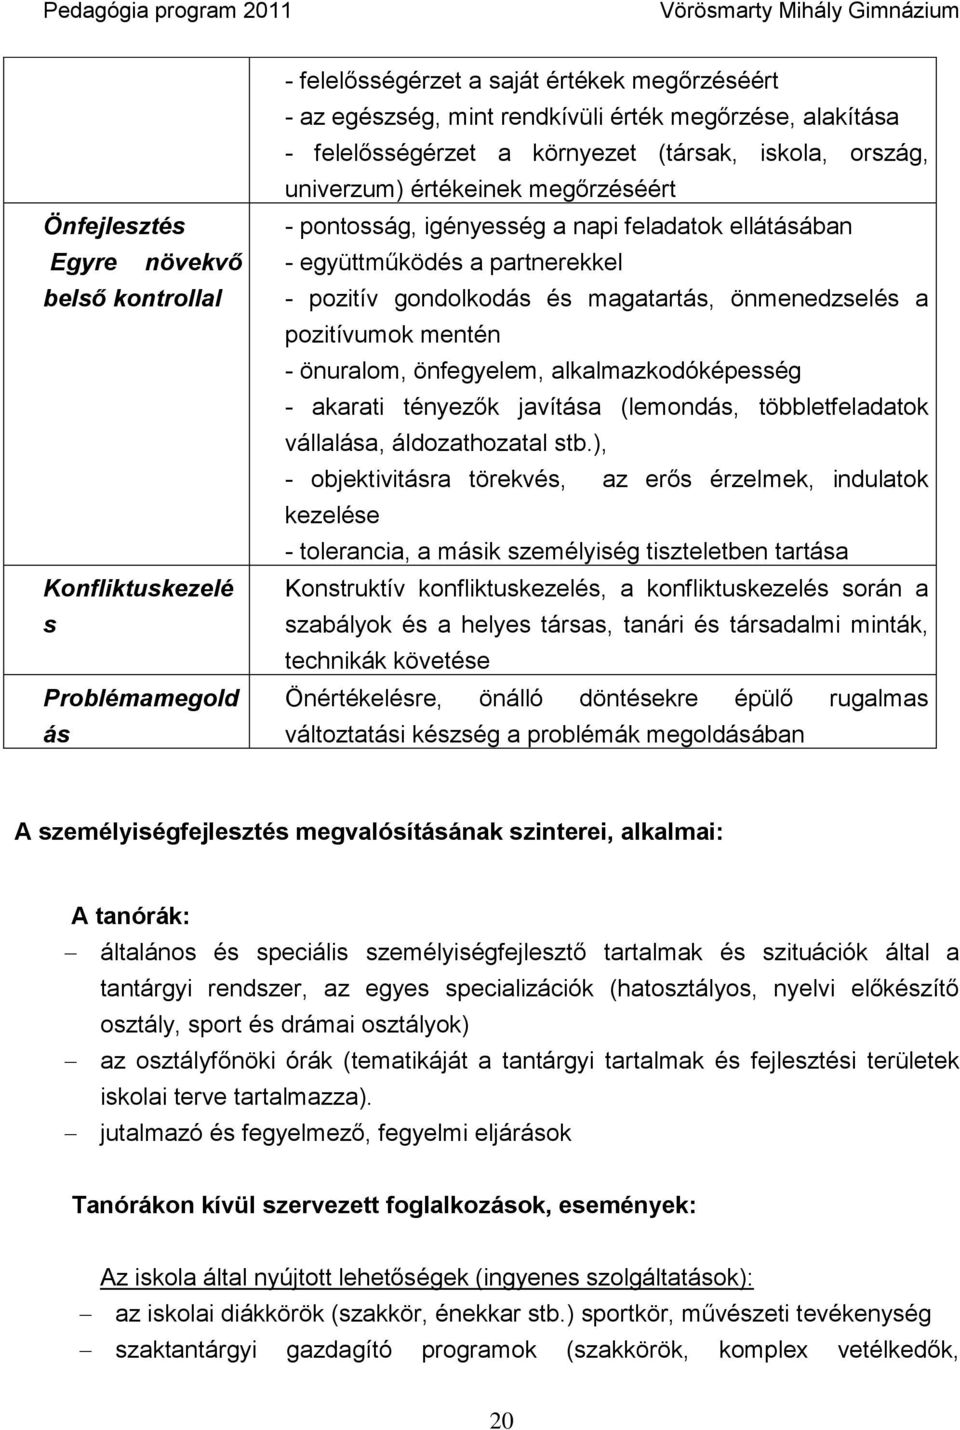 Magyar postatörténet – Wikipédia